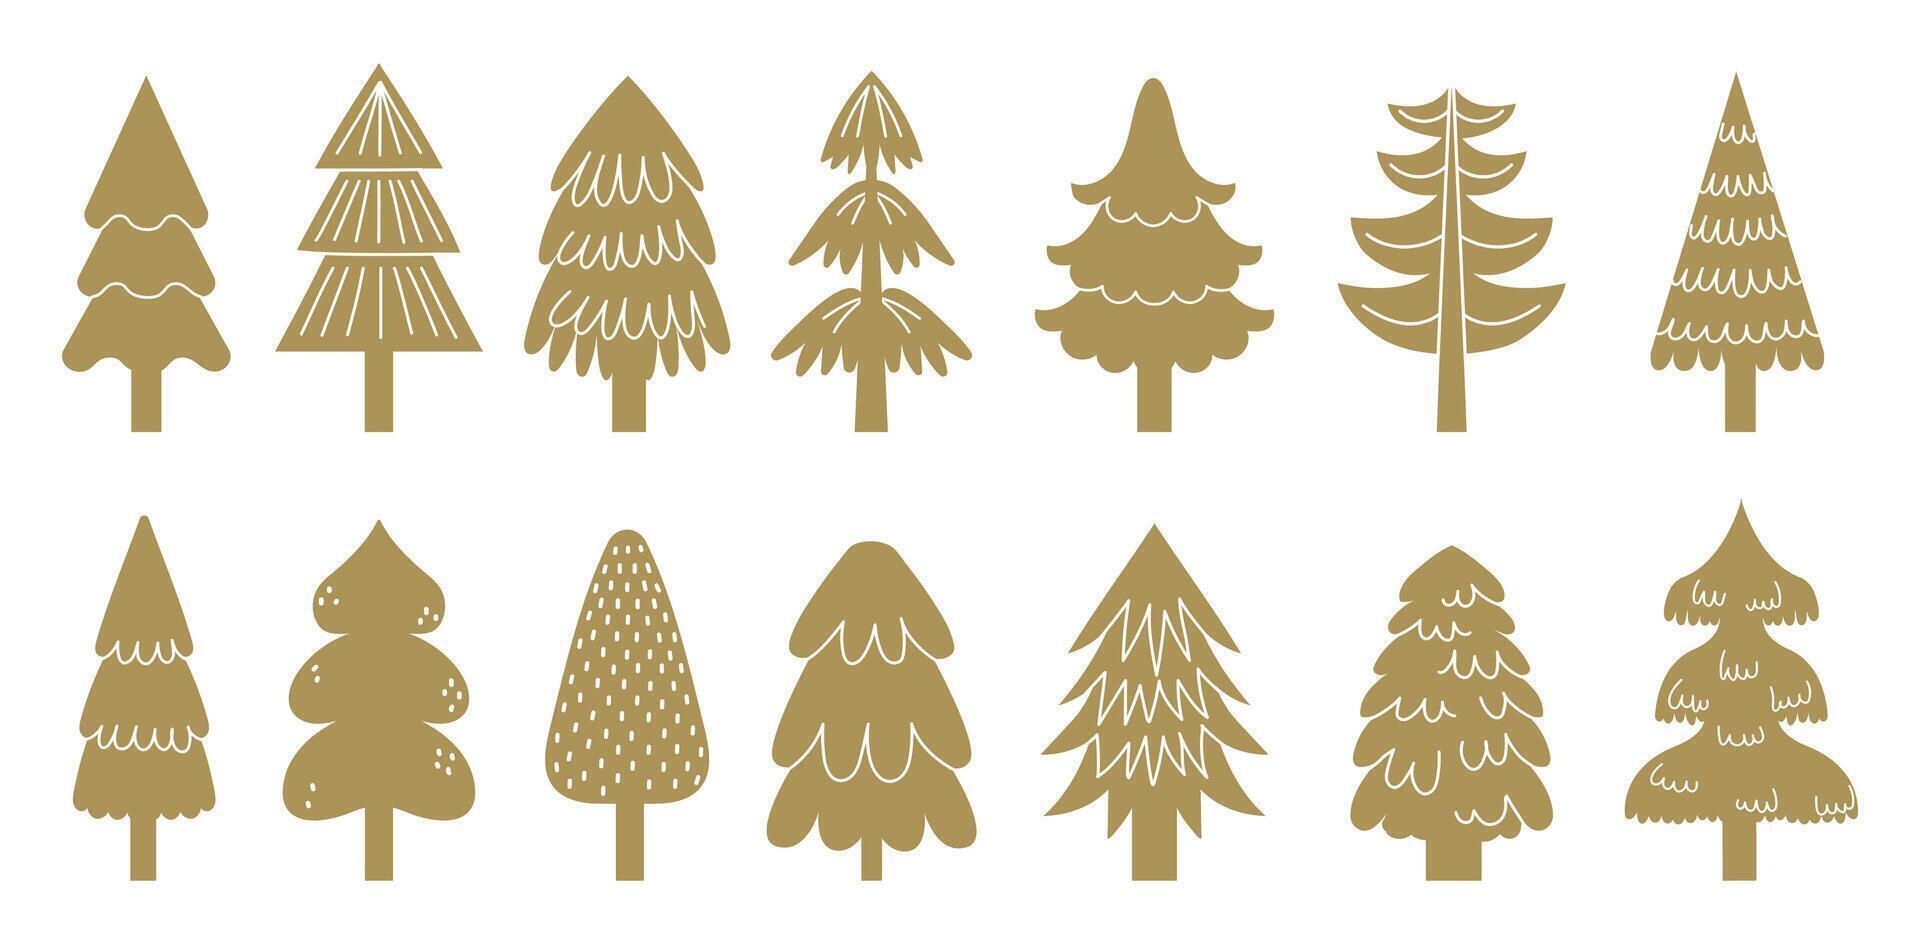 d'oro Natale albero icone di collezione per vacanza vettore